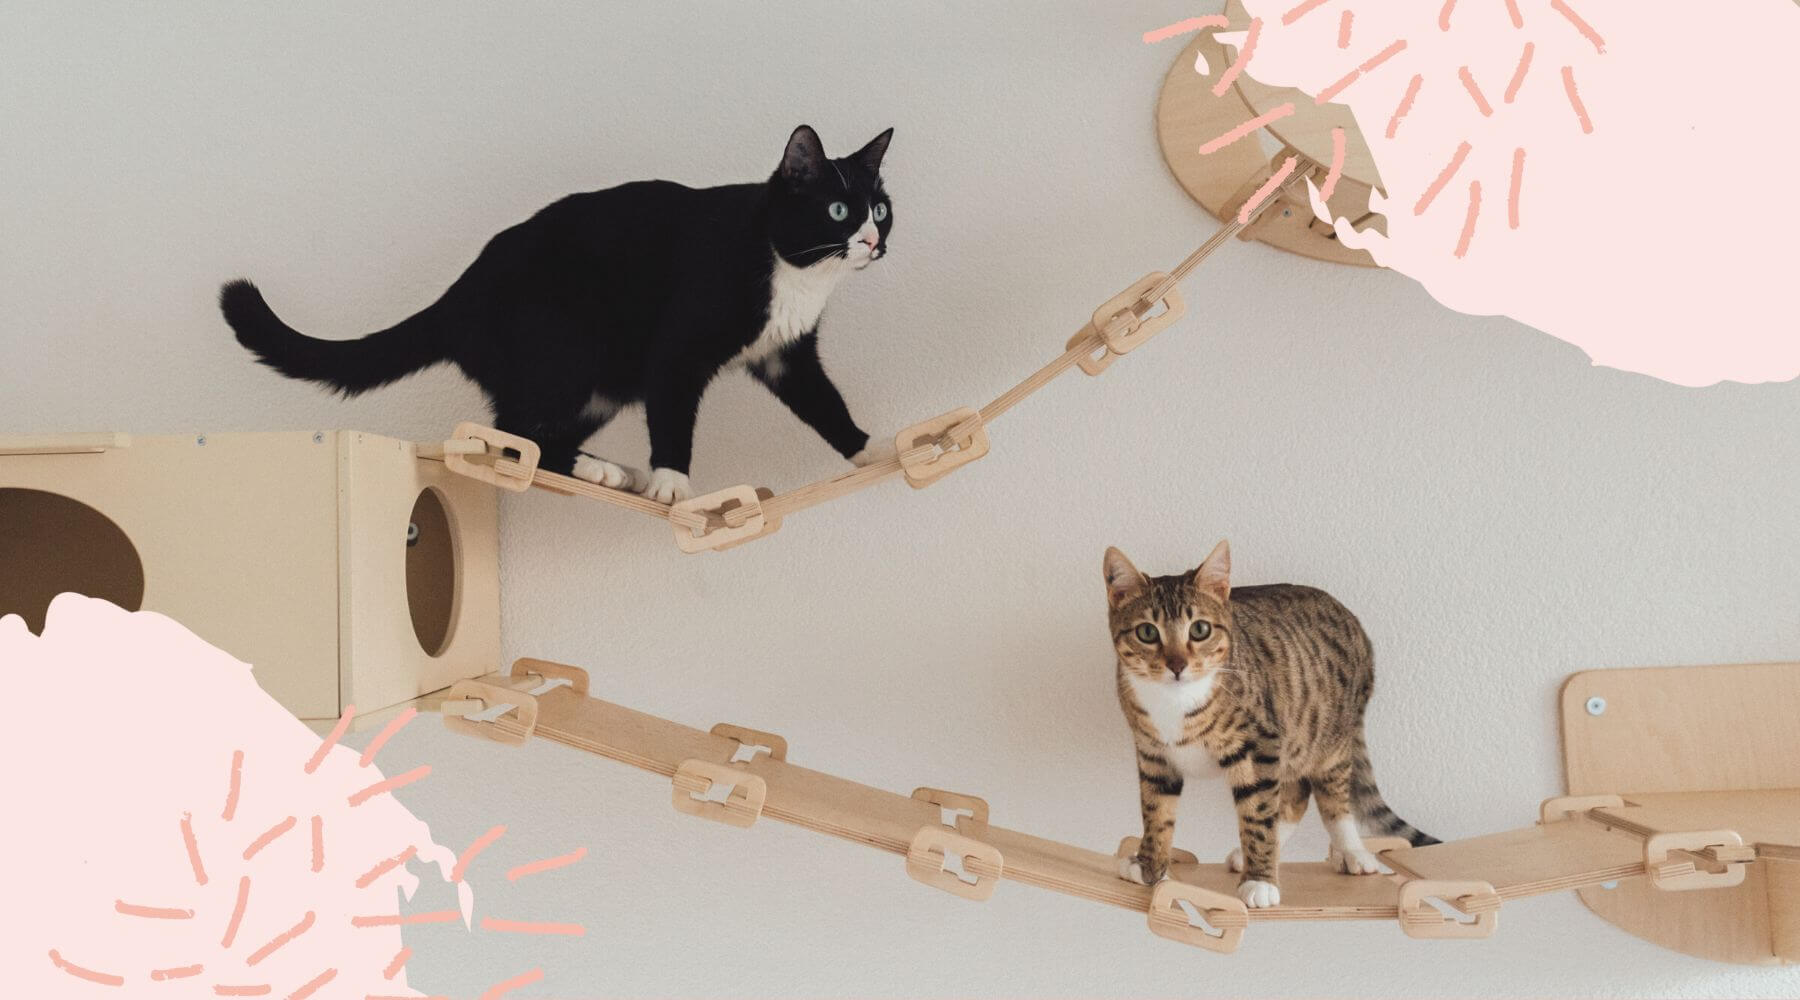 Zwei Katzen klettern auf einem Catwalk an einer Wand.